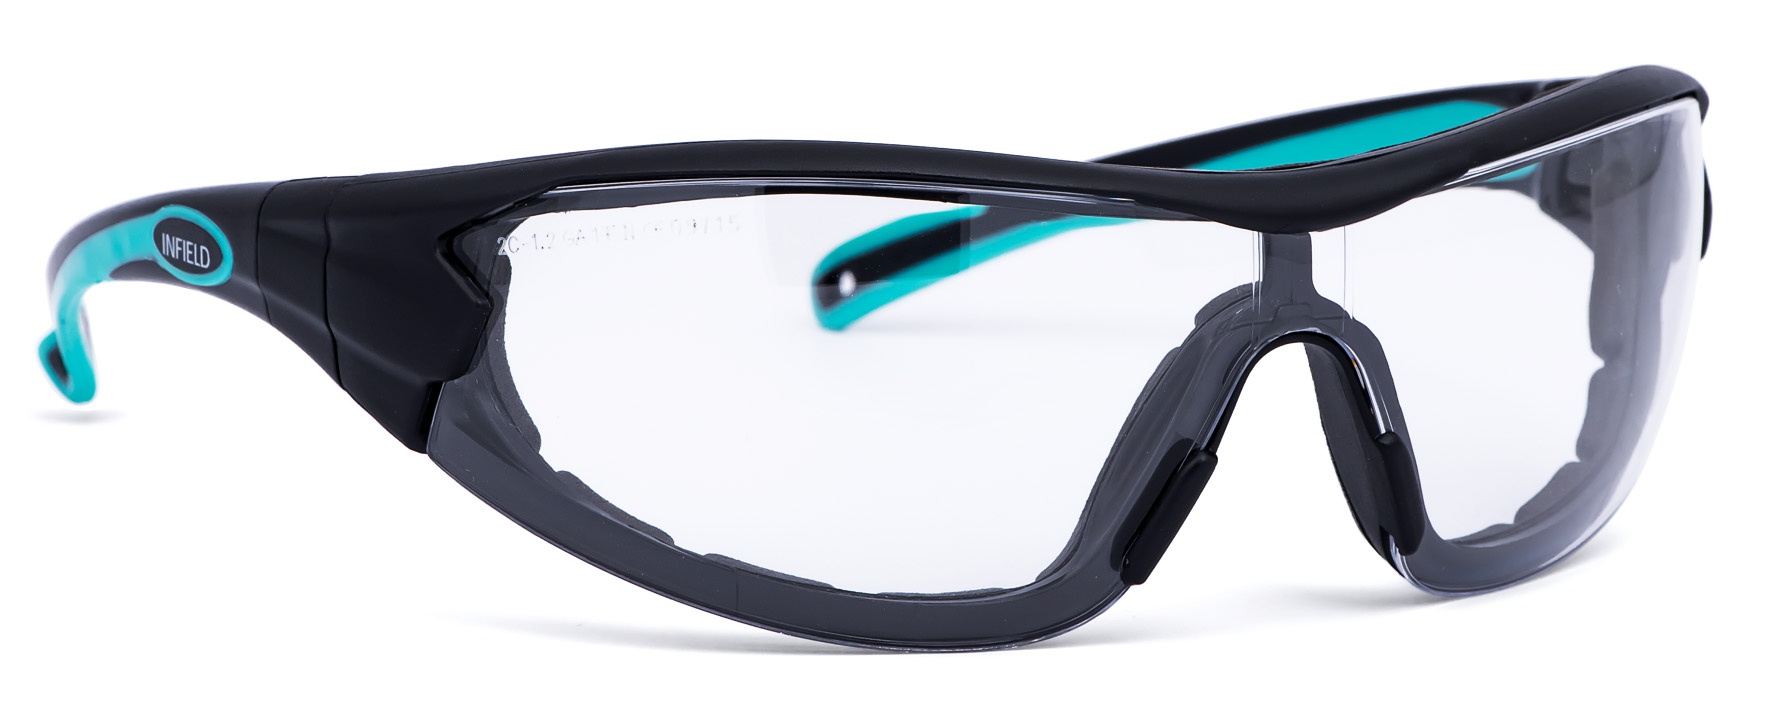 Купить строительные очки. Infield Velor очки. Очки gross защитные. Защитные открытые очки РОСОМЗ o88 Surgut 18840. Очки защитные ОРТЕХ спорт 111-0011-01.